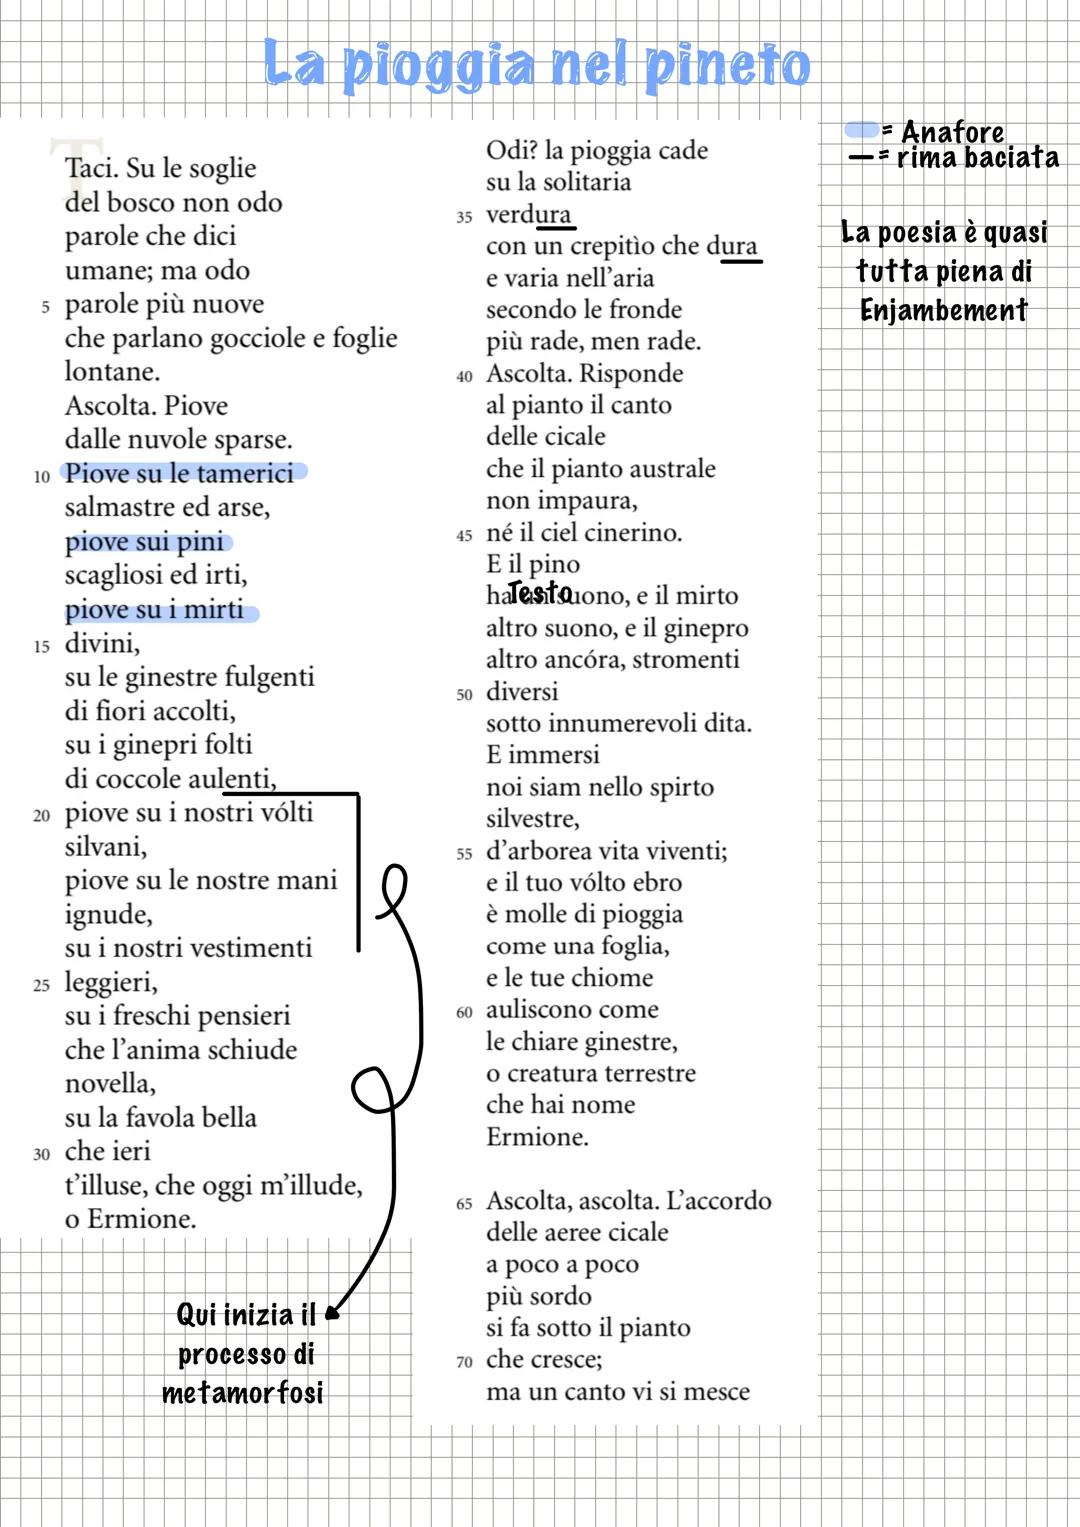 GABRIELE D'ANNUNZIO
insieme a pascoli, è il poeta più rappresentativo del:
DECADENTISMO ITALIANO
Ma i due poeti sono
Assai differenti
Per fa